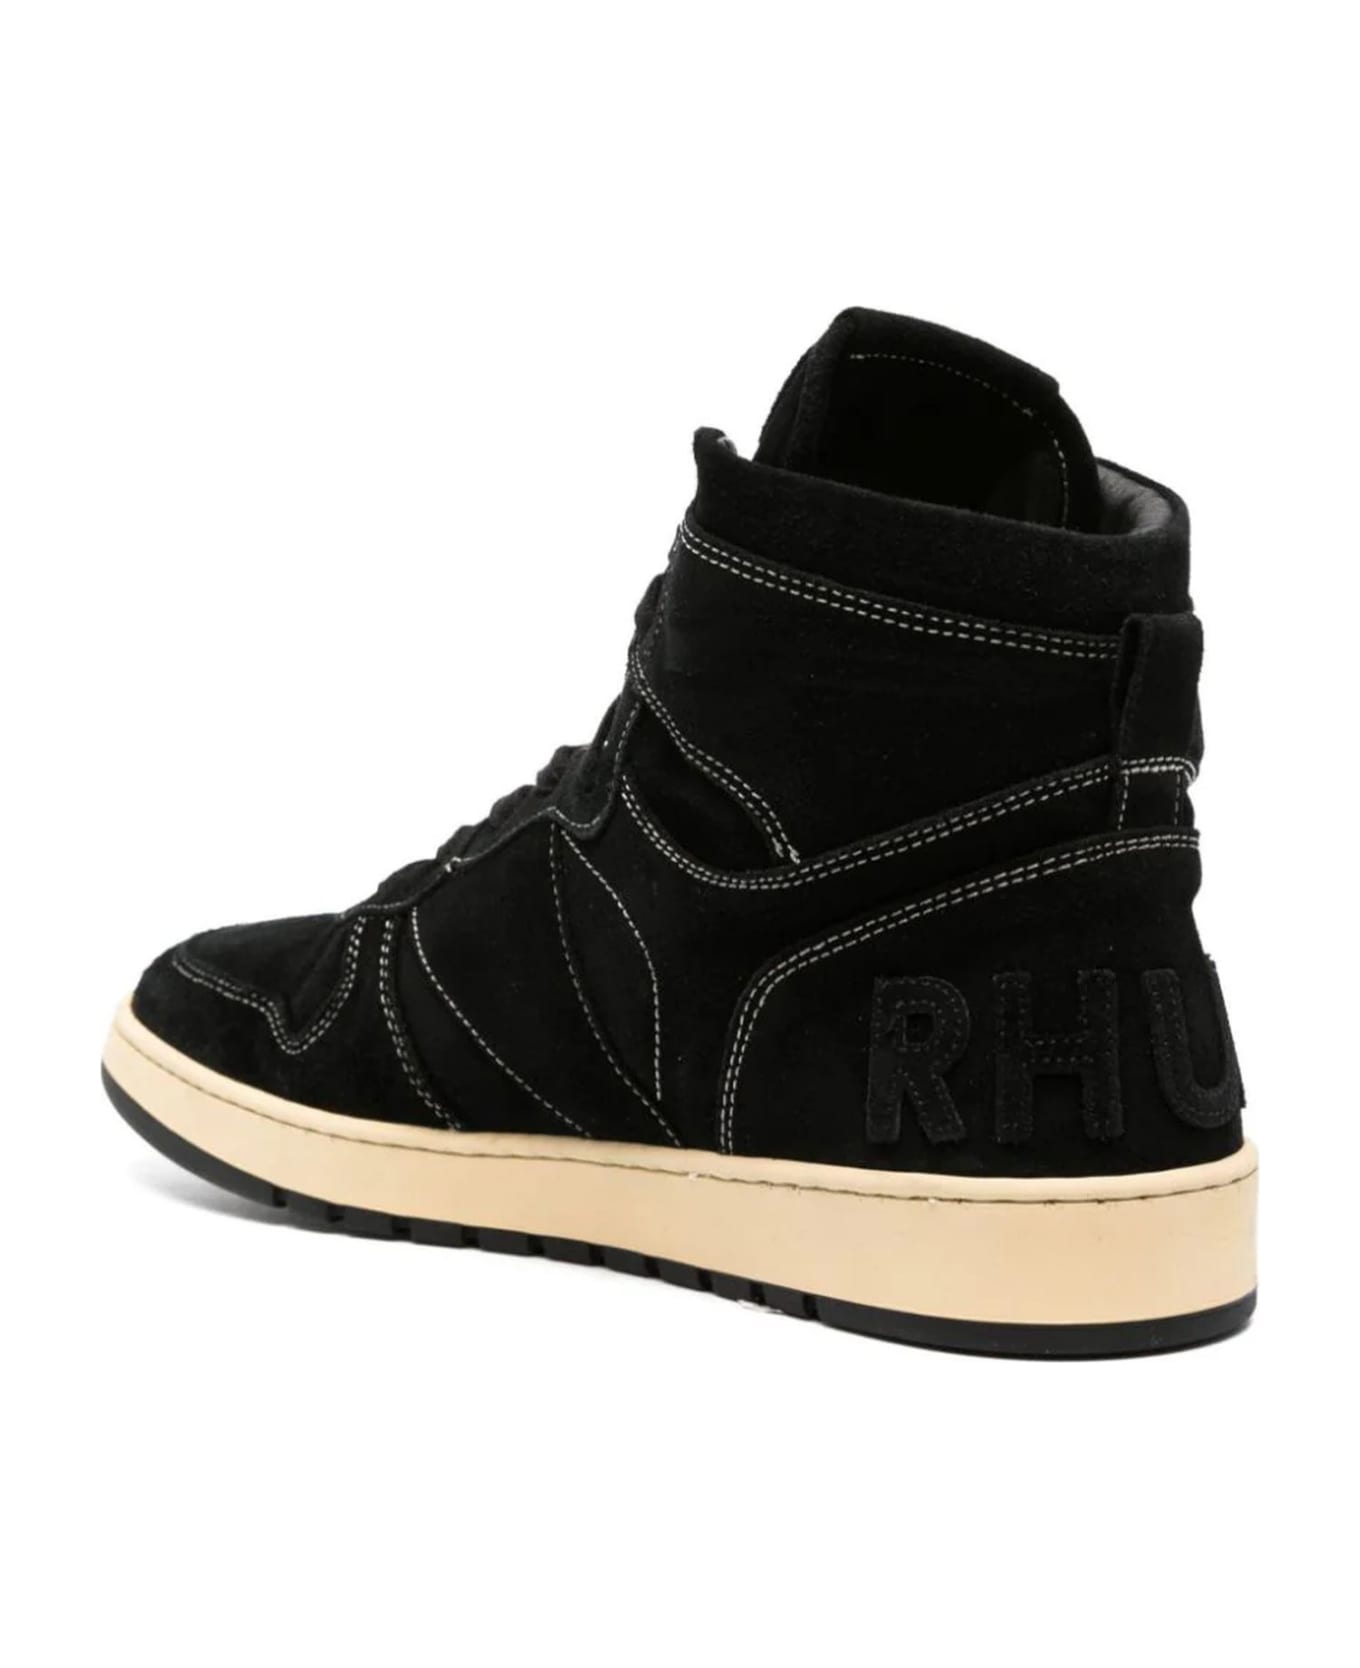 Rhude Black Rhecess High-top Suede Sneakers - Black Sude スニーカー